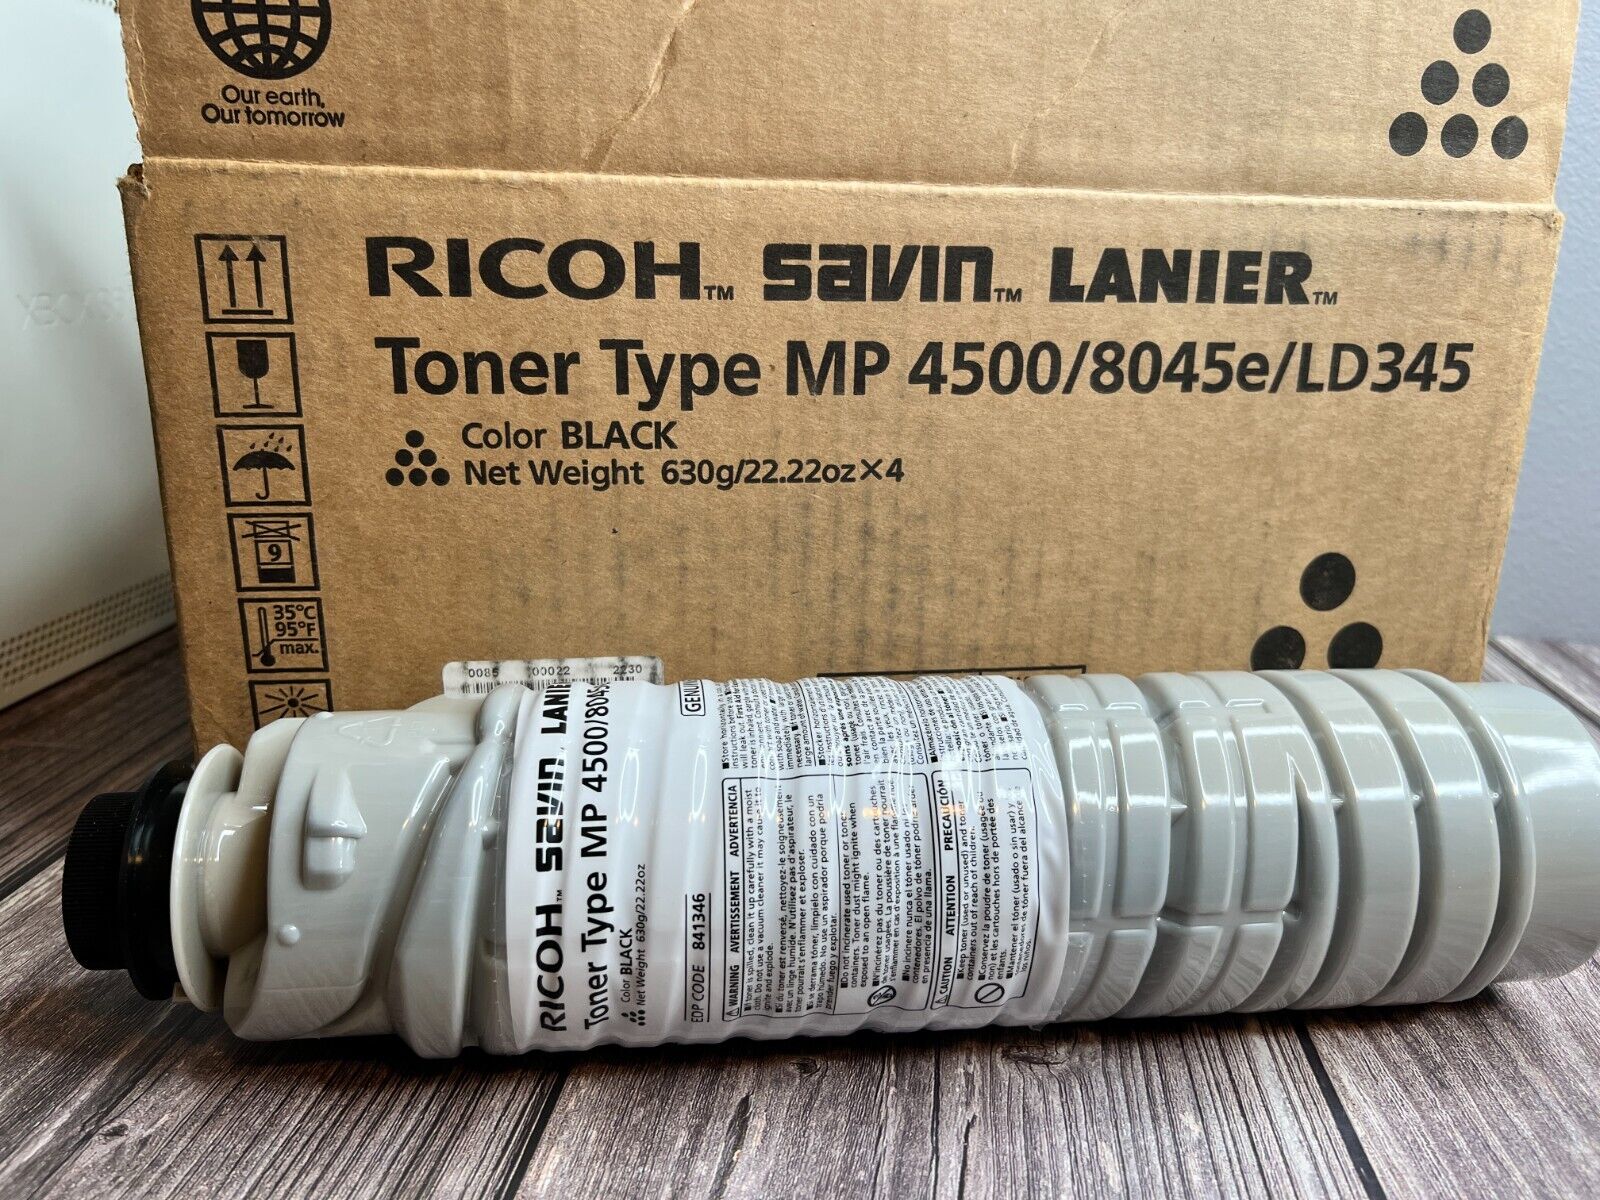 Ricoh Black Toner Cartridge Savin Lanier Type 841346 MP 4500/8045e/LD345